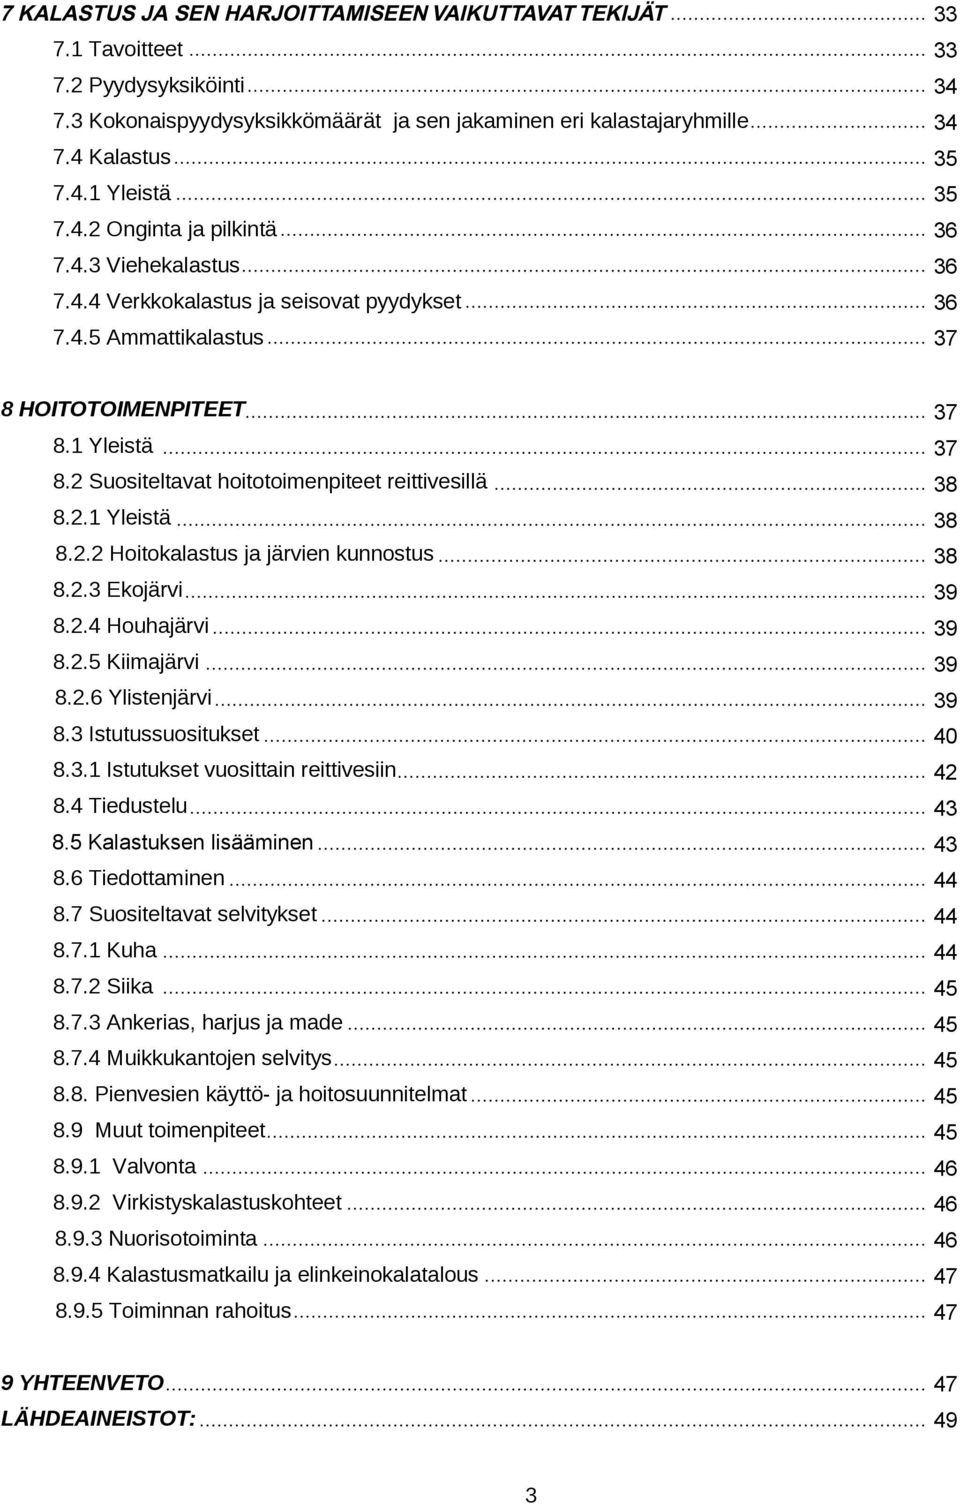 2 Suositeltavat hoitotoimenpiteet reittivesillä 8.2.1 Yleistä 8.2.2 Hoitokalastus ja järvien kunnostus 8.2.3 Ekojärvi. 8.2.4 Houhajärvi. 8.2.5 Kiimajärvi 8.2.6 Ylistenjärvi.. 8.3 Istutussuositukset 8.